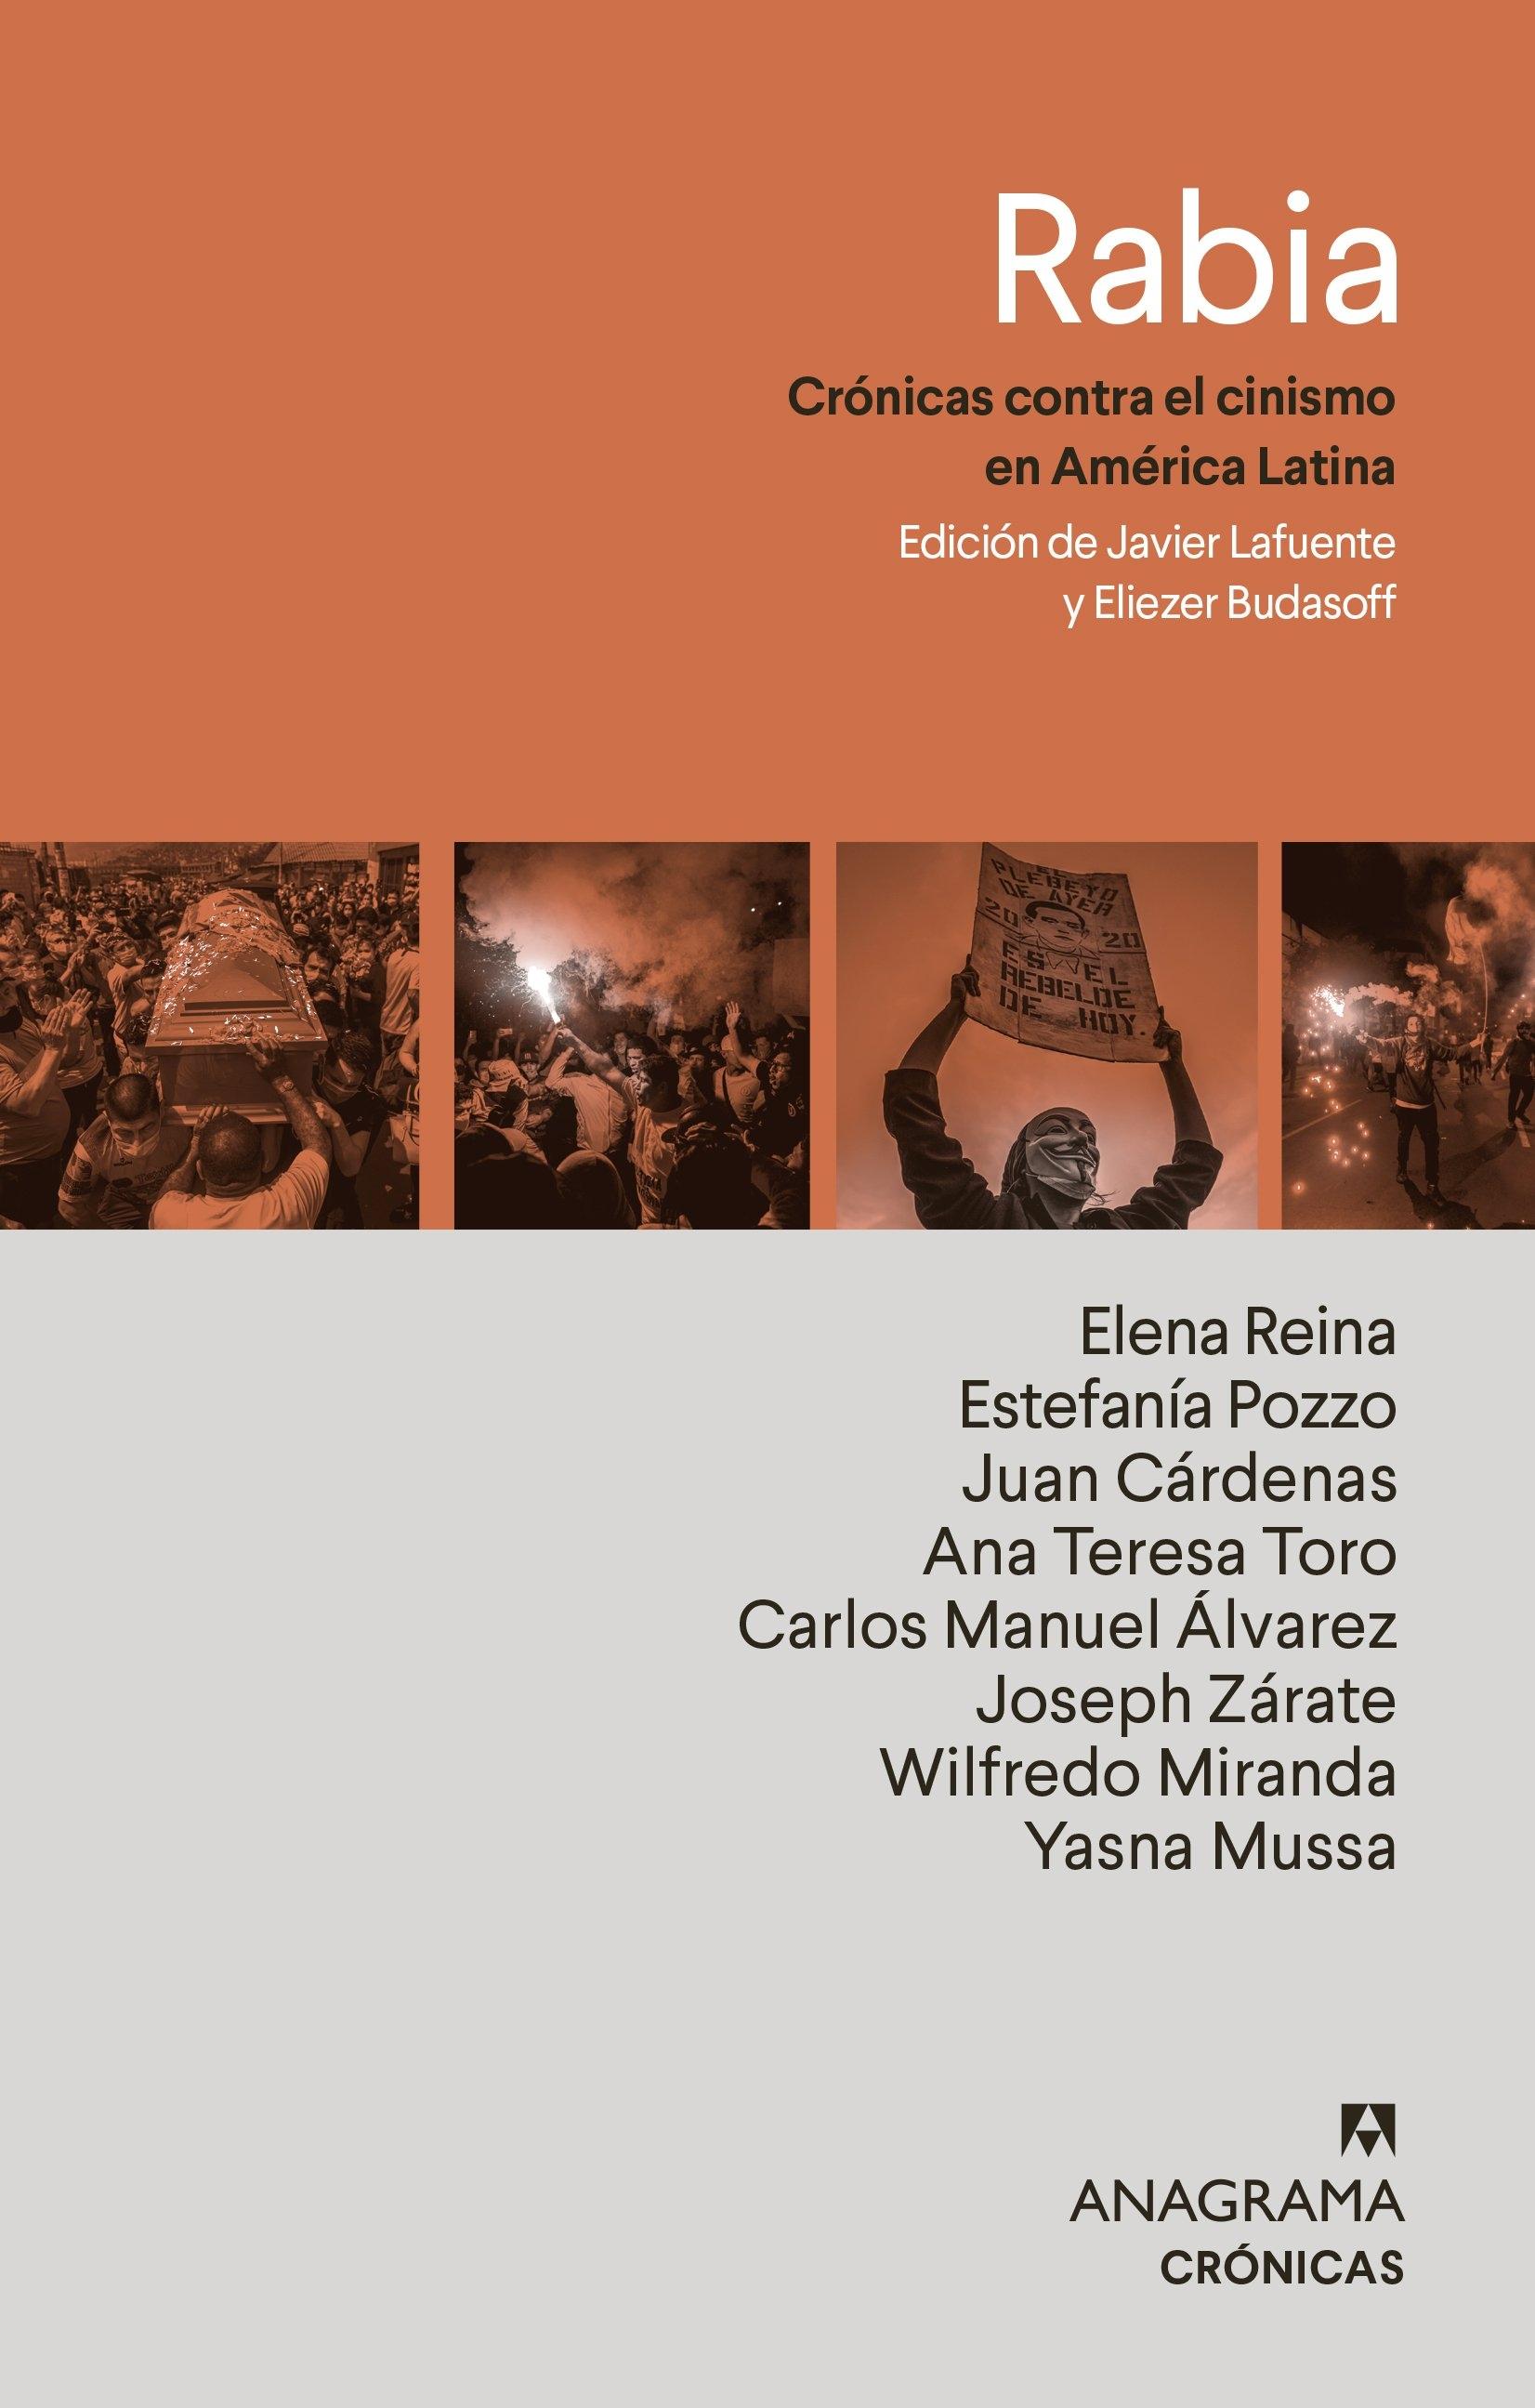 Rabia "Crónicas contra el cinismo en latinoamérica"